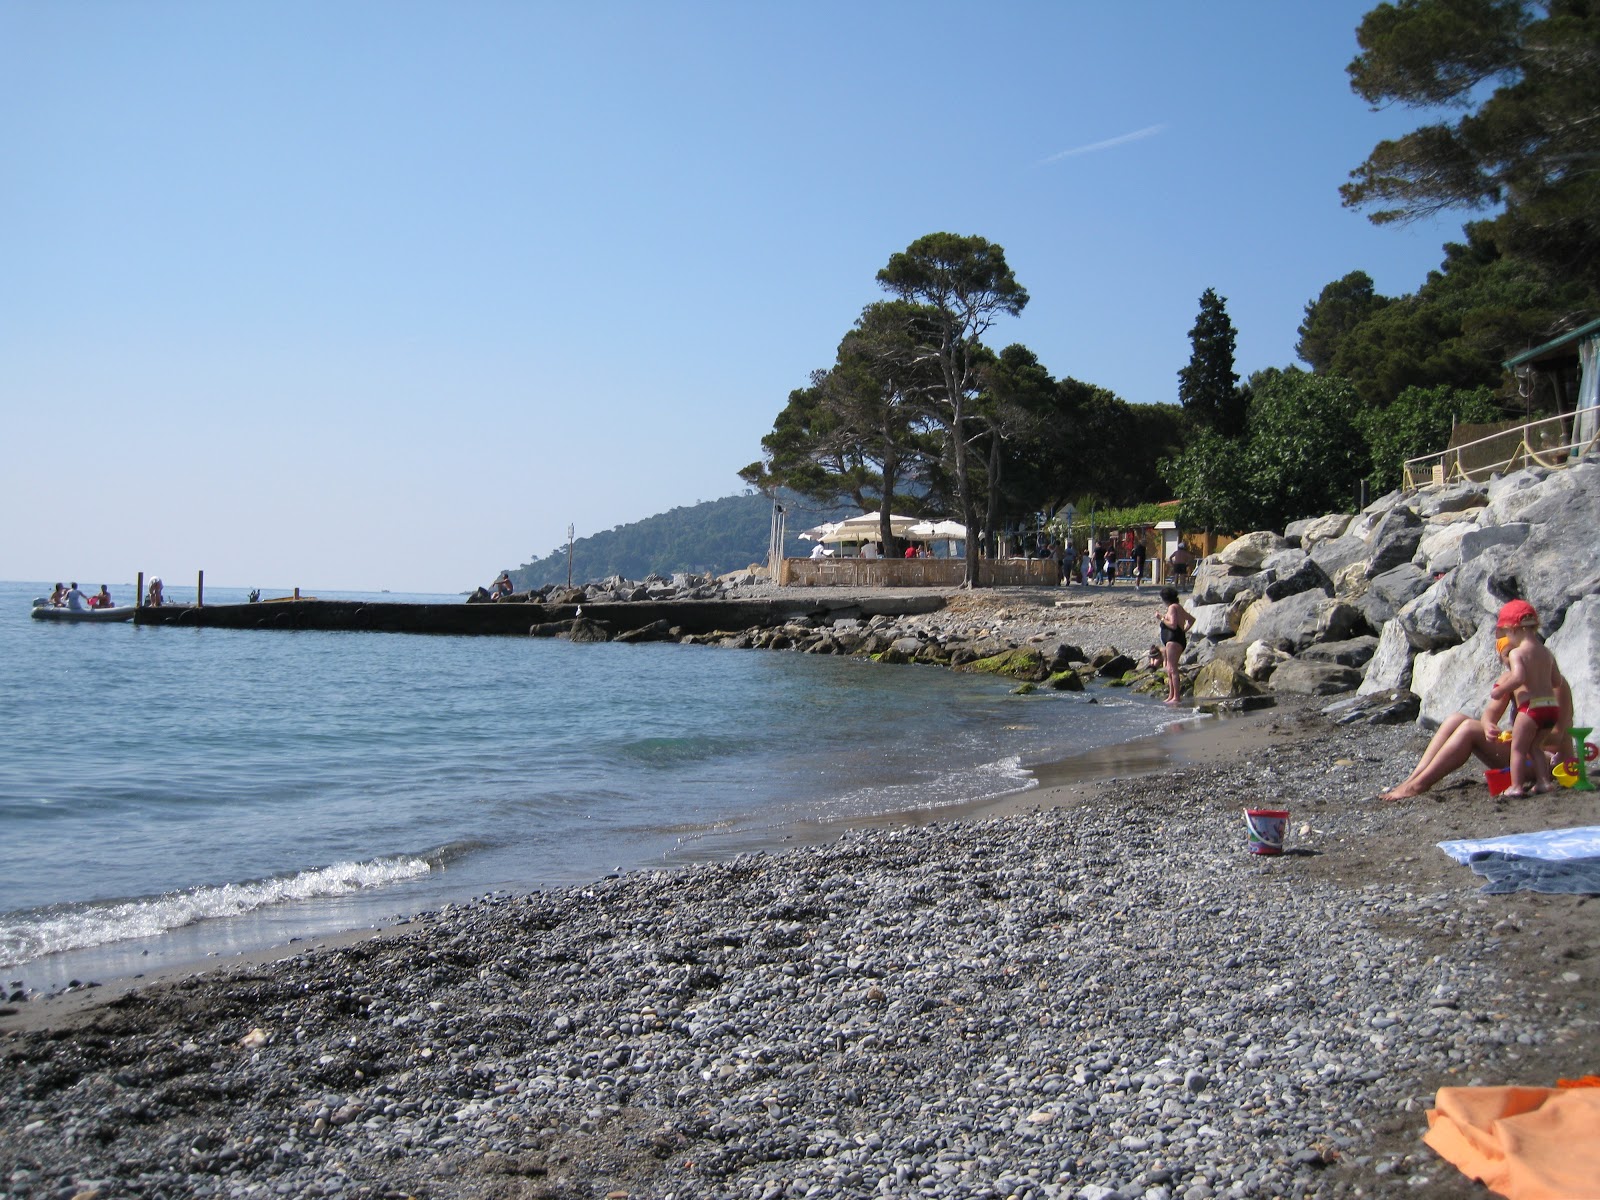 Zdjęcie Pozzale beach - popularne miejsce wśród znawców relaksu